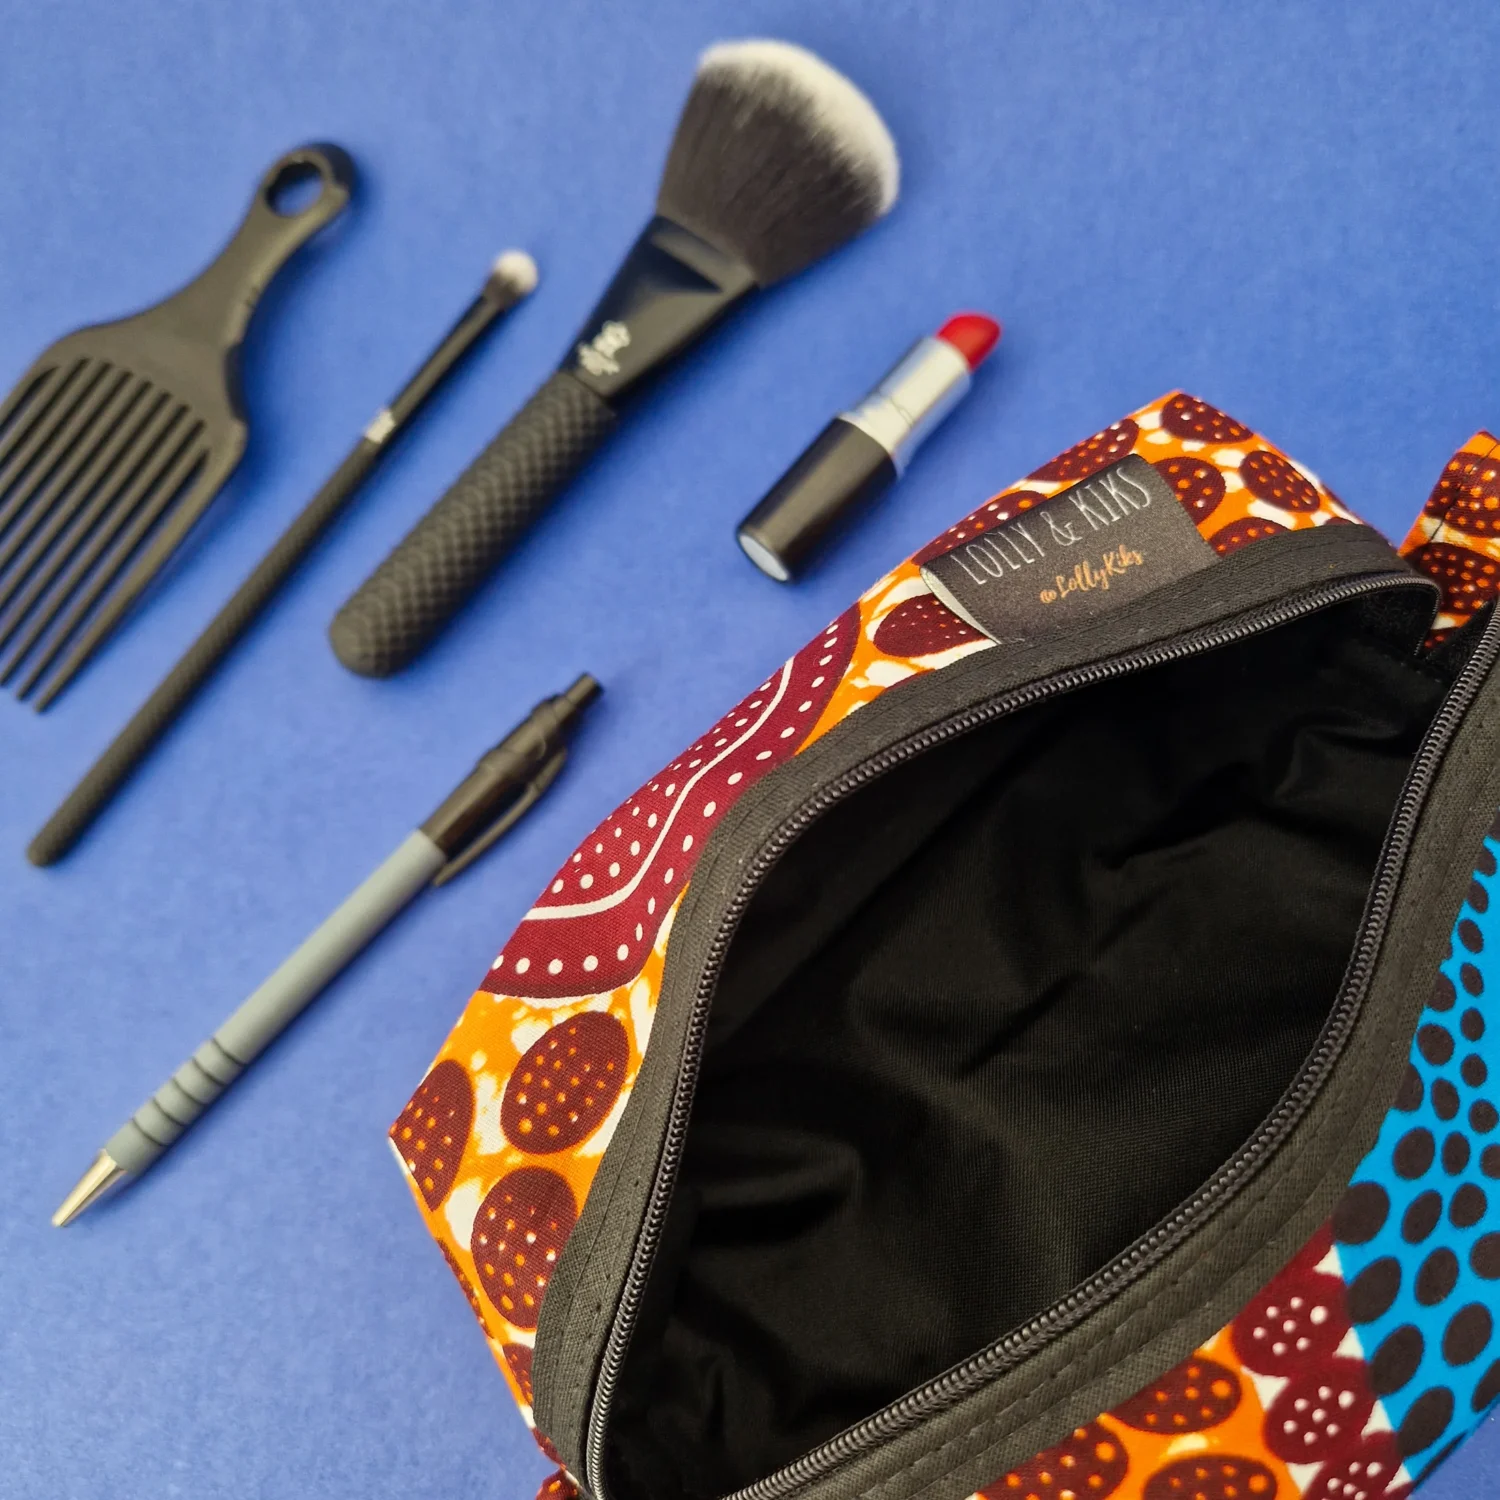 African Print Makeup Bag